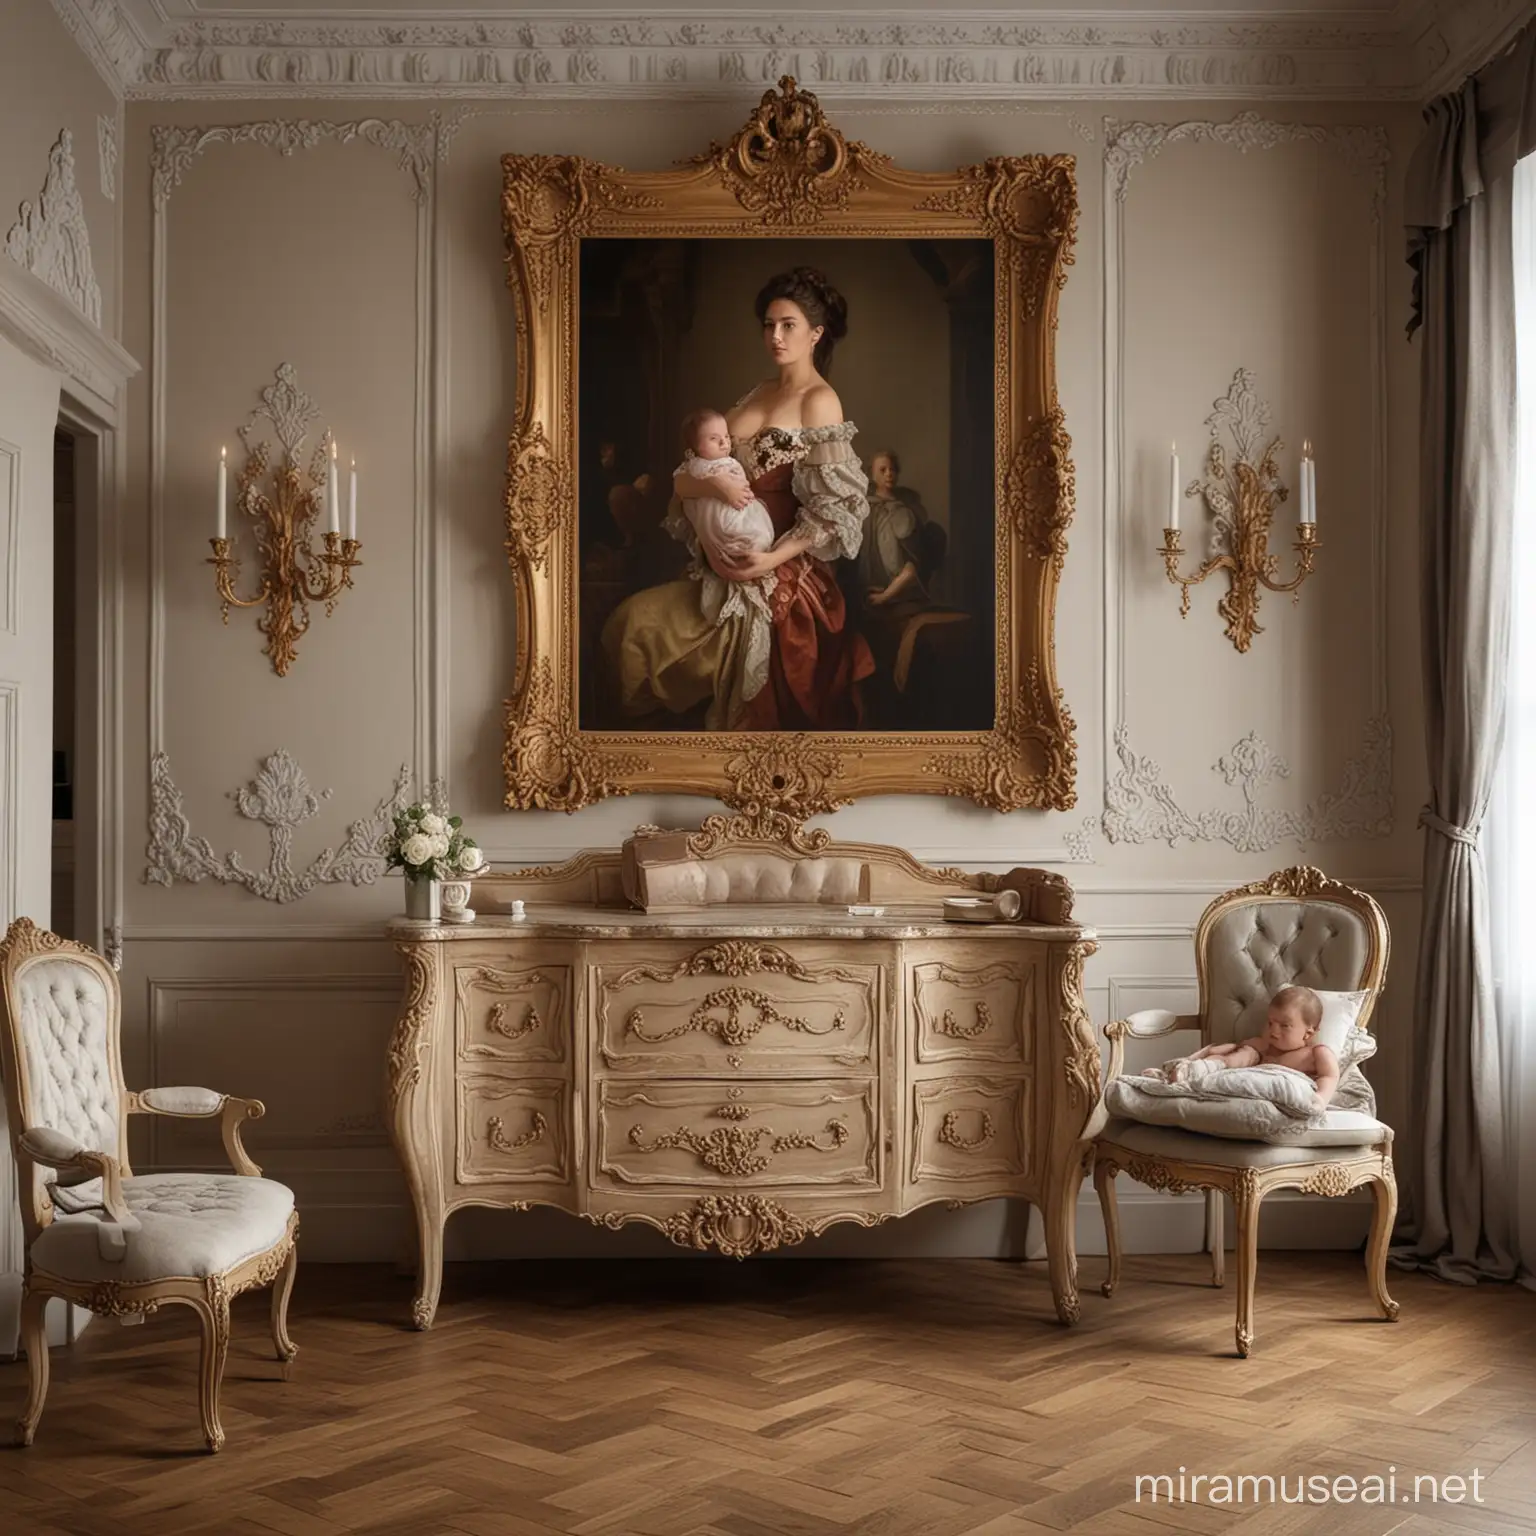 Genera una imagen de estilo barroco con tonos claros oscuros, en donde aparezca una madre sosteniendo a su bebé en la sala de su casa decorada con muebles del estilo barroco.